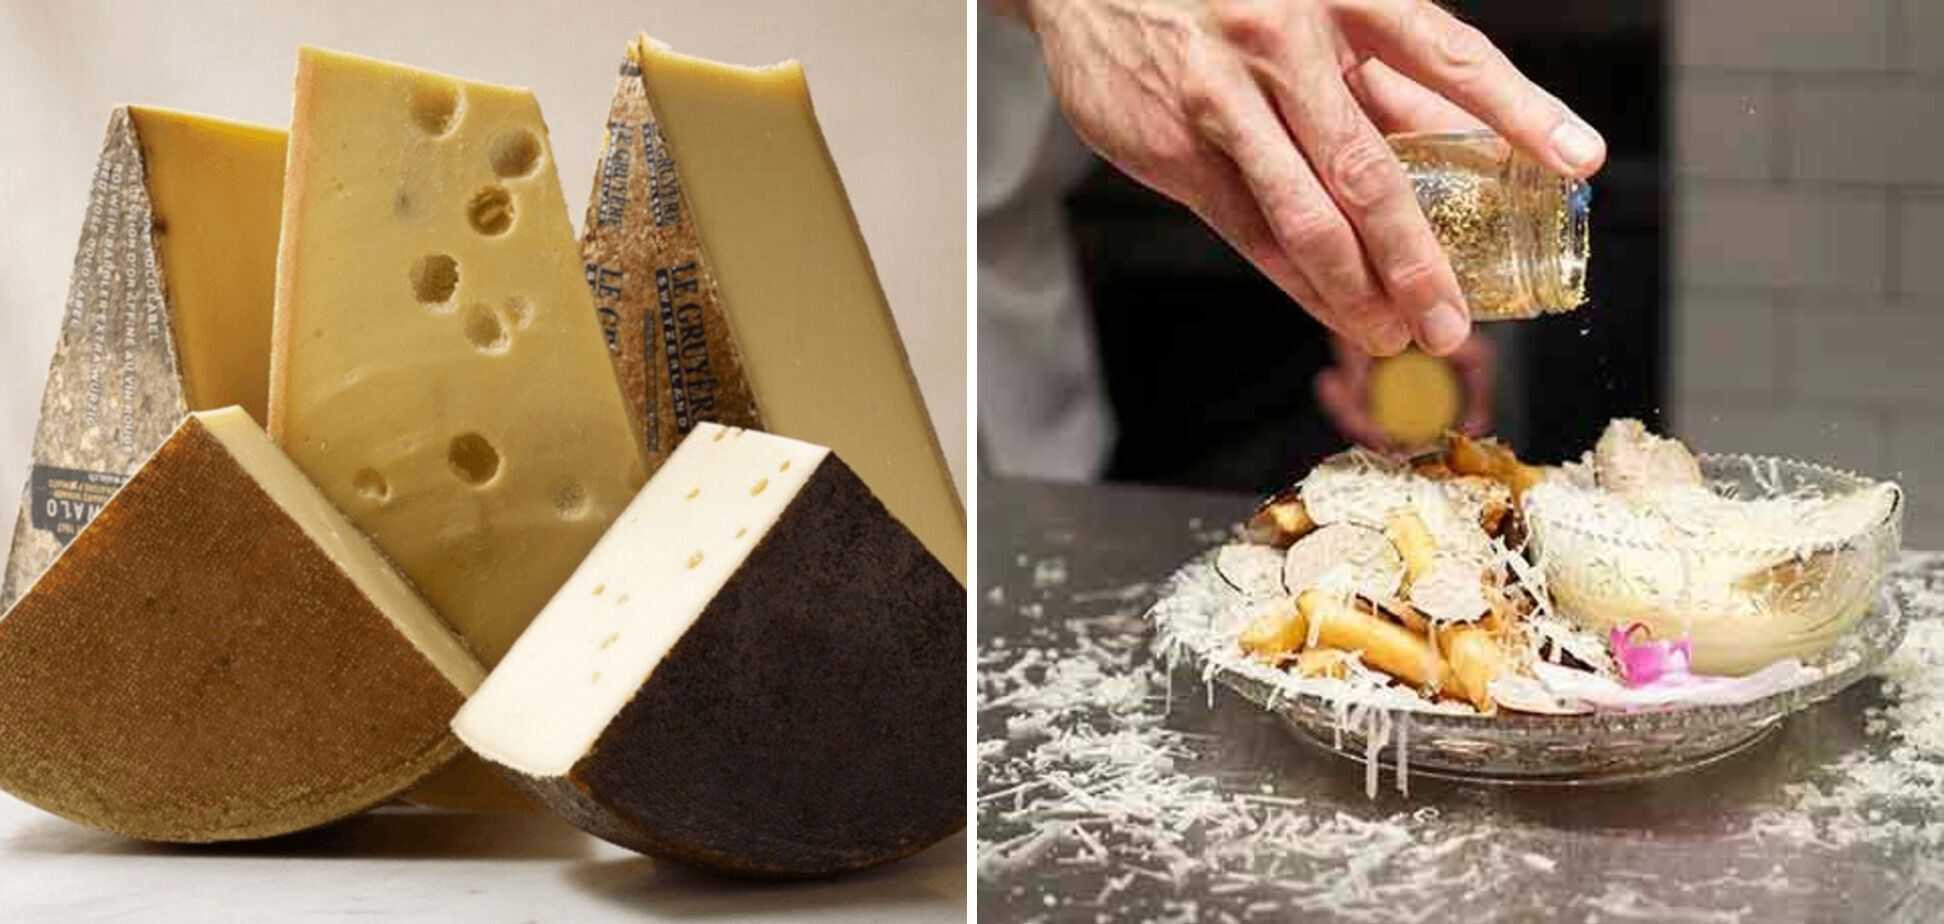 Сыр морне и золото – элементы для декора дорогой картофеля